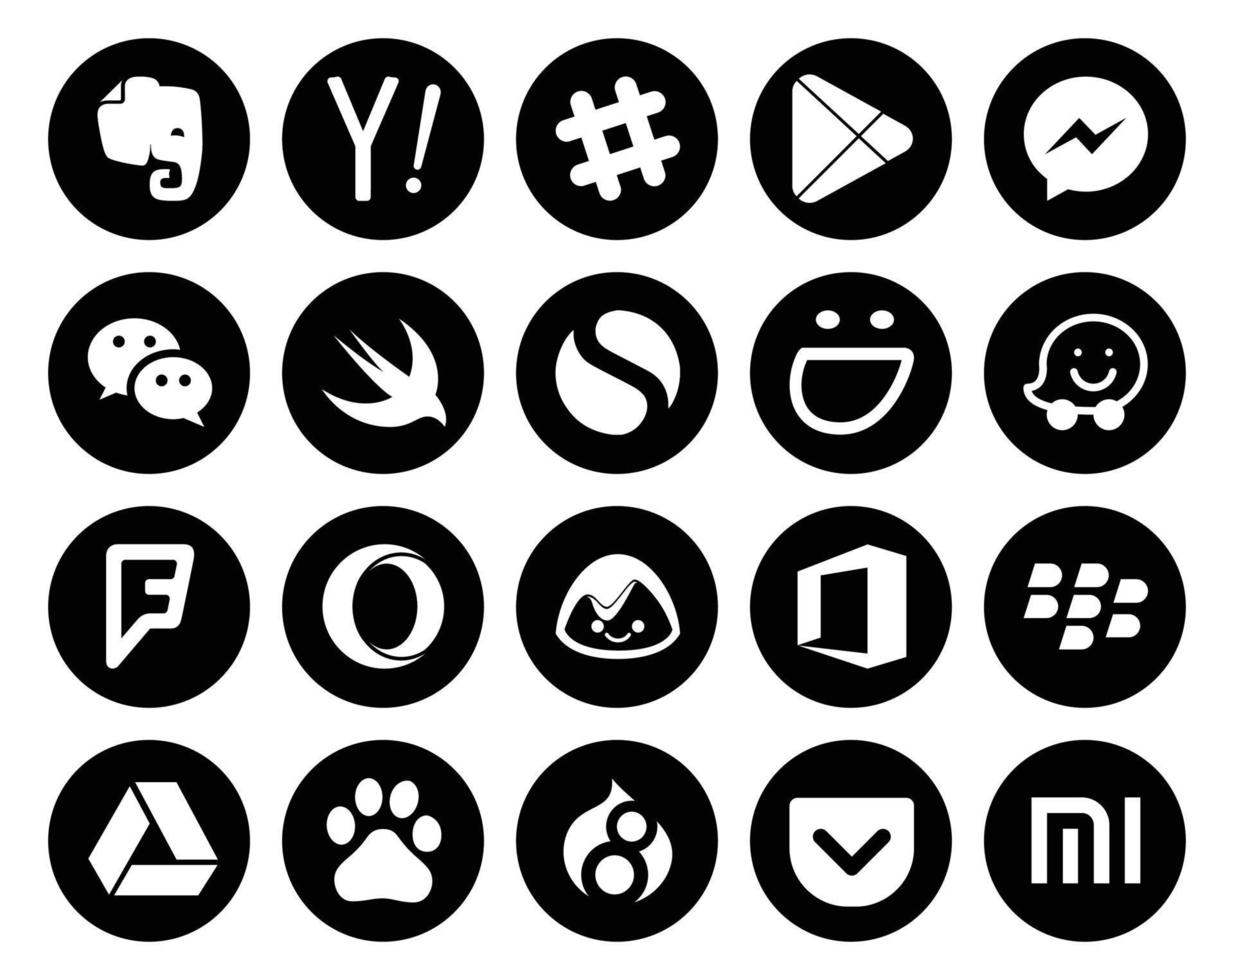 20 Sozial Medien Symbol Pack einschließlich Büro Oper wechat Foursquare selbstgefällig vektor